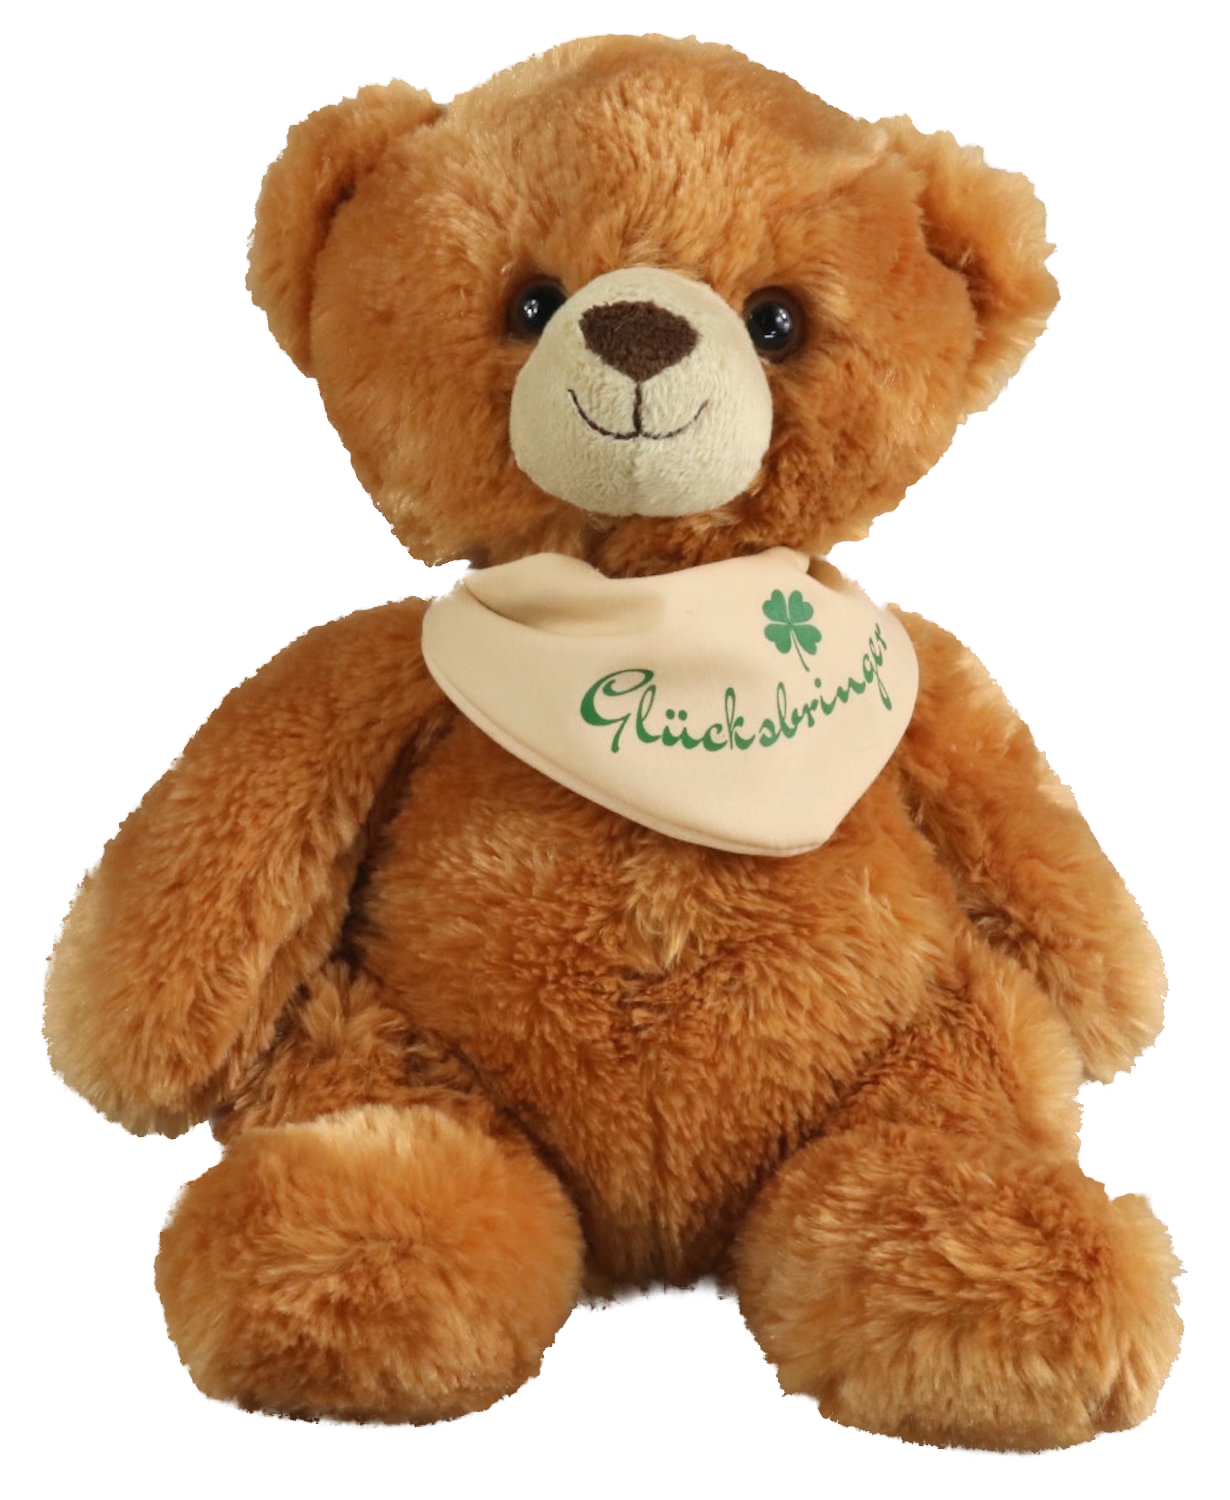 Teddy with Scarf, "Lucky Charm" - 25 cm (height) - Teddy bear - Stuffed Animal, Plush Toy